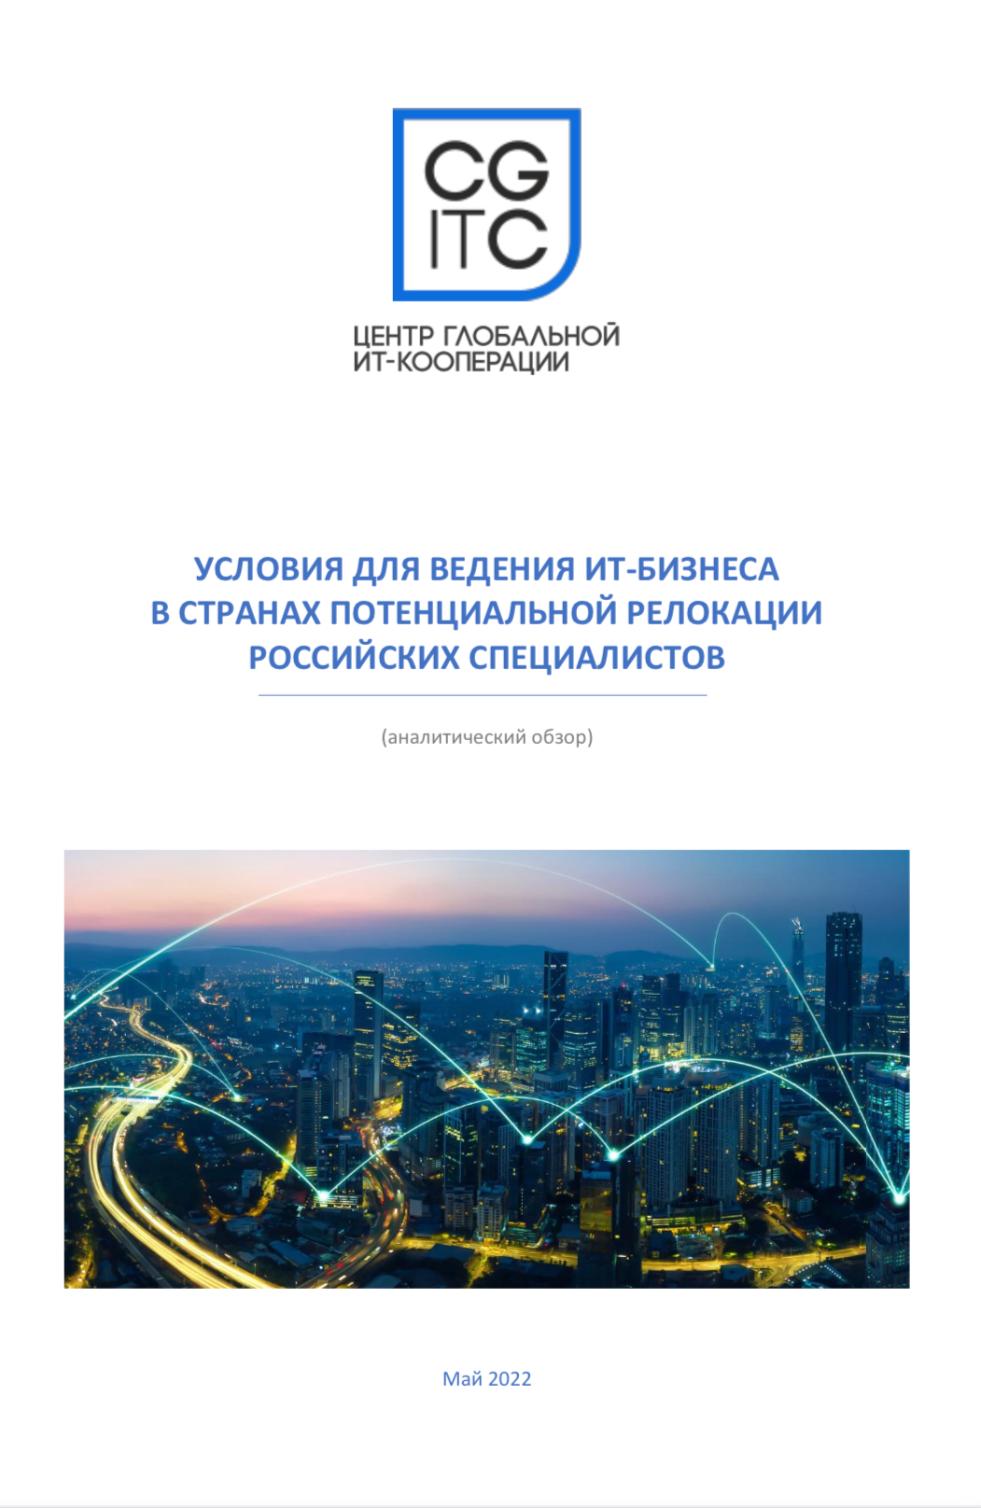  Условия для ведения ИТ-бизнеса в странах потенциальной релокации российских специалистов